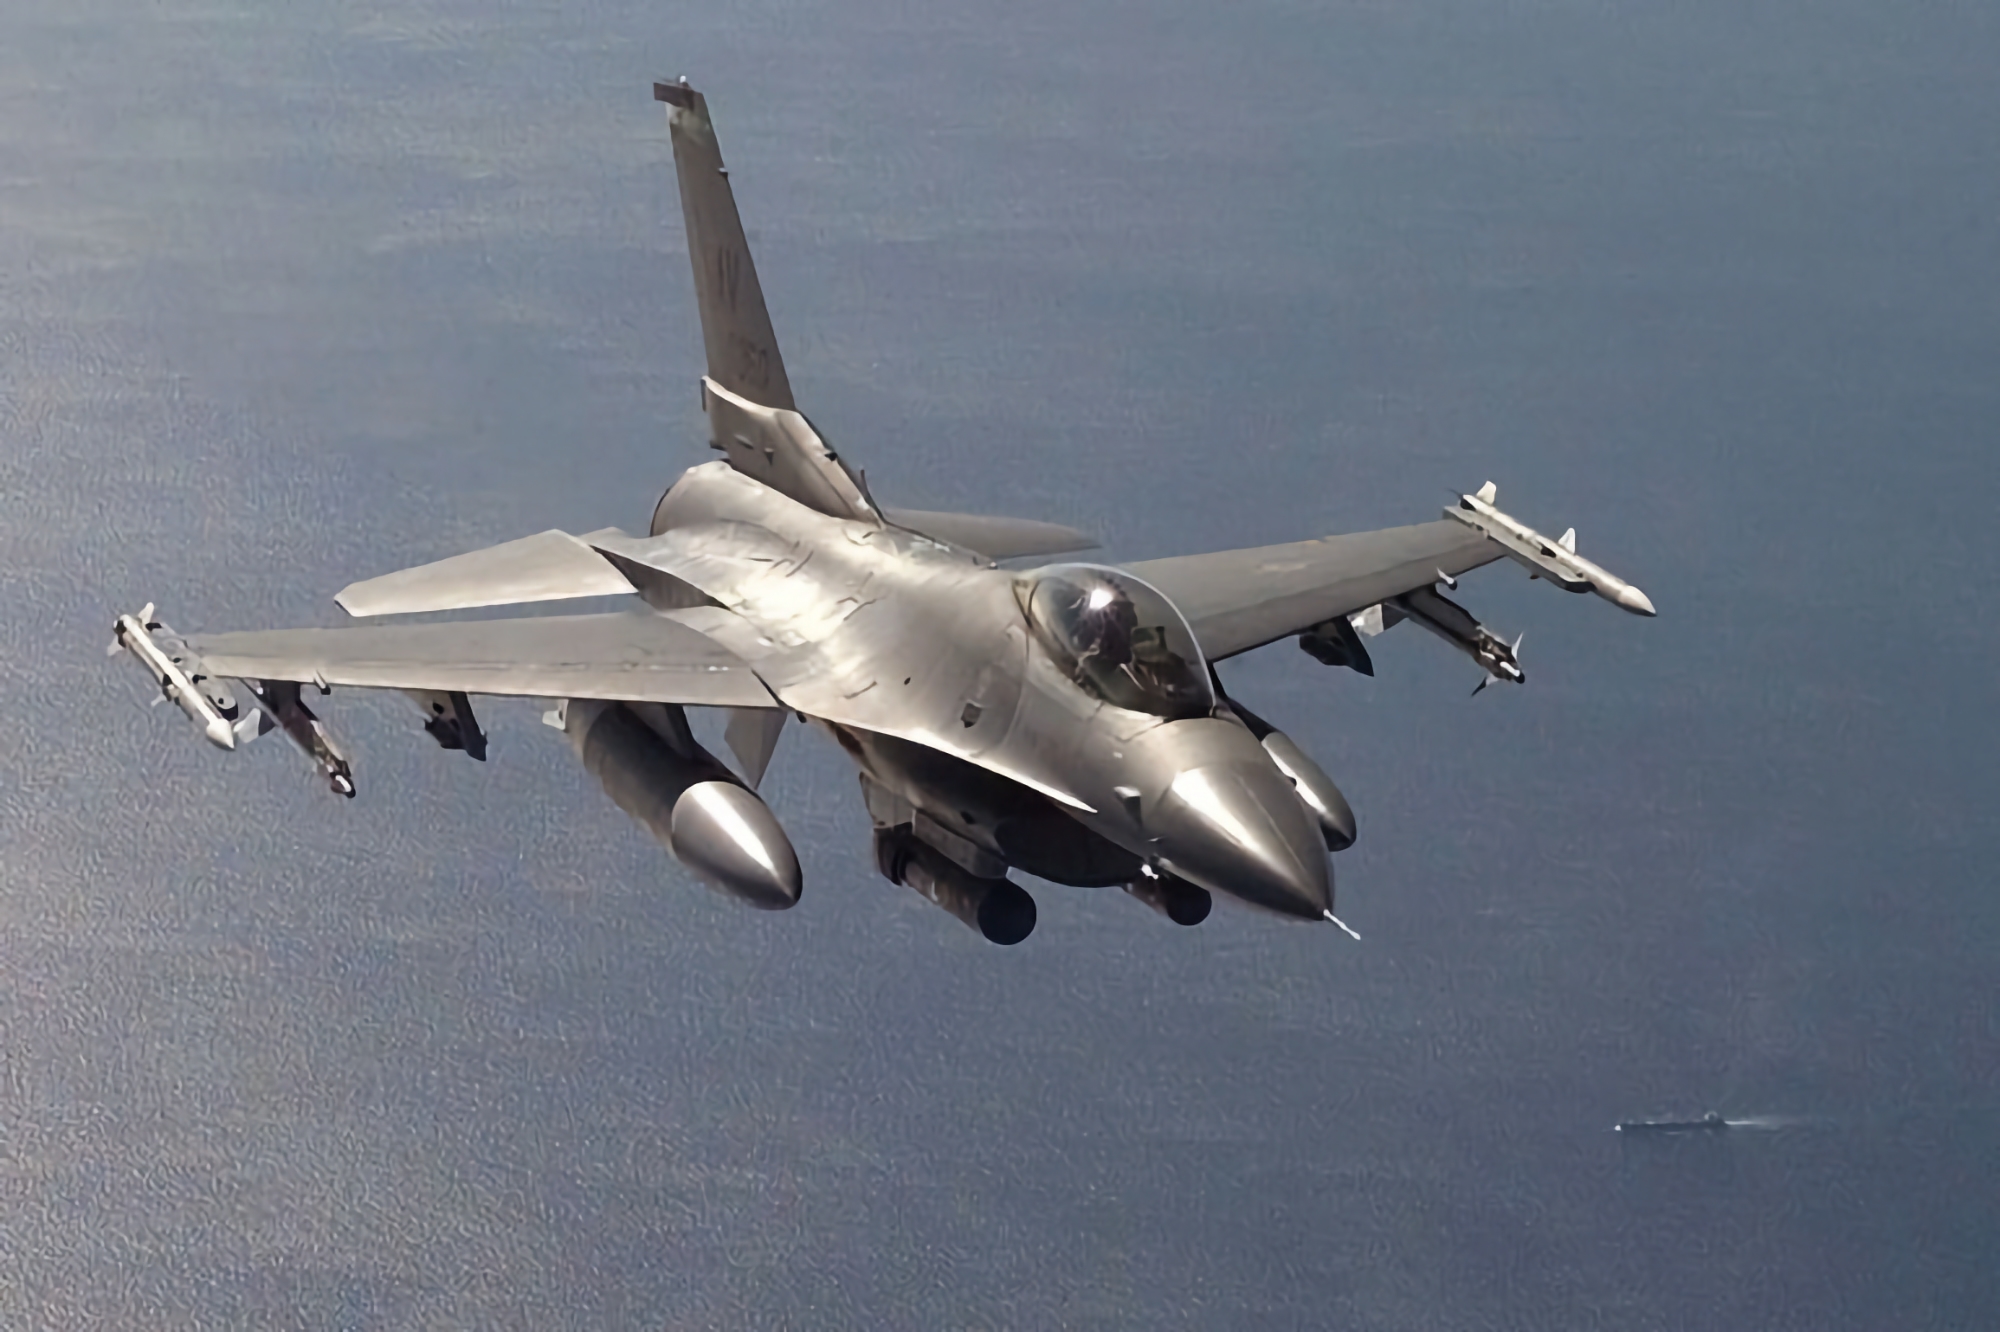 Belgien bevilger 100 mio. euro til vedligeholdelse af ukrainske F-16 Fighting Falcon-kampfly